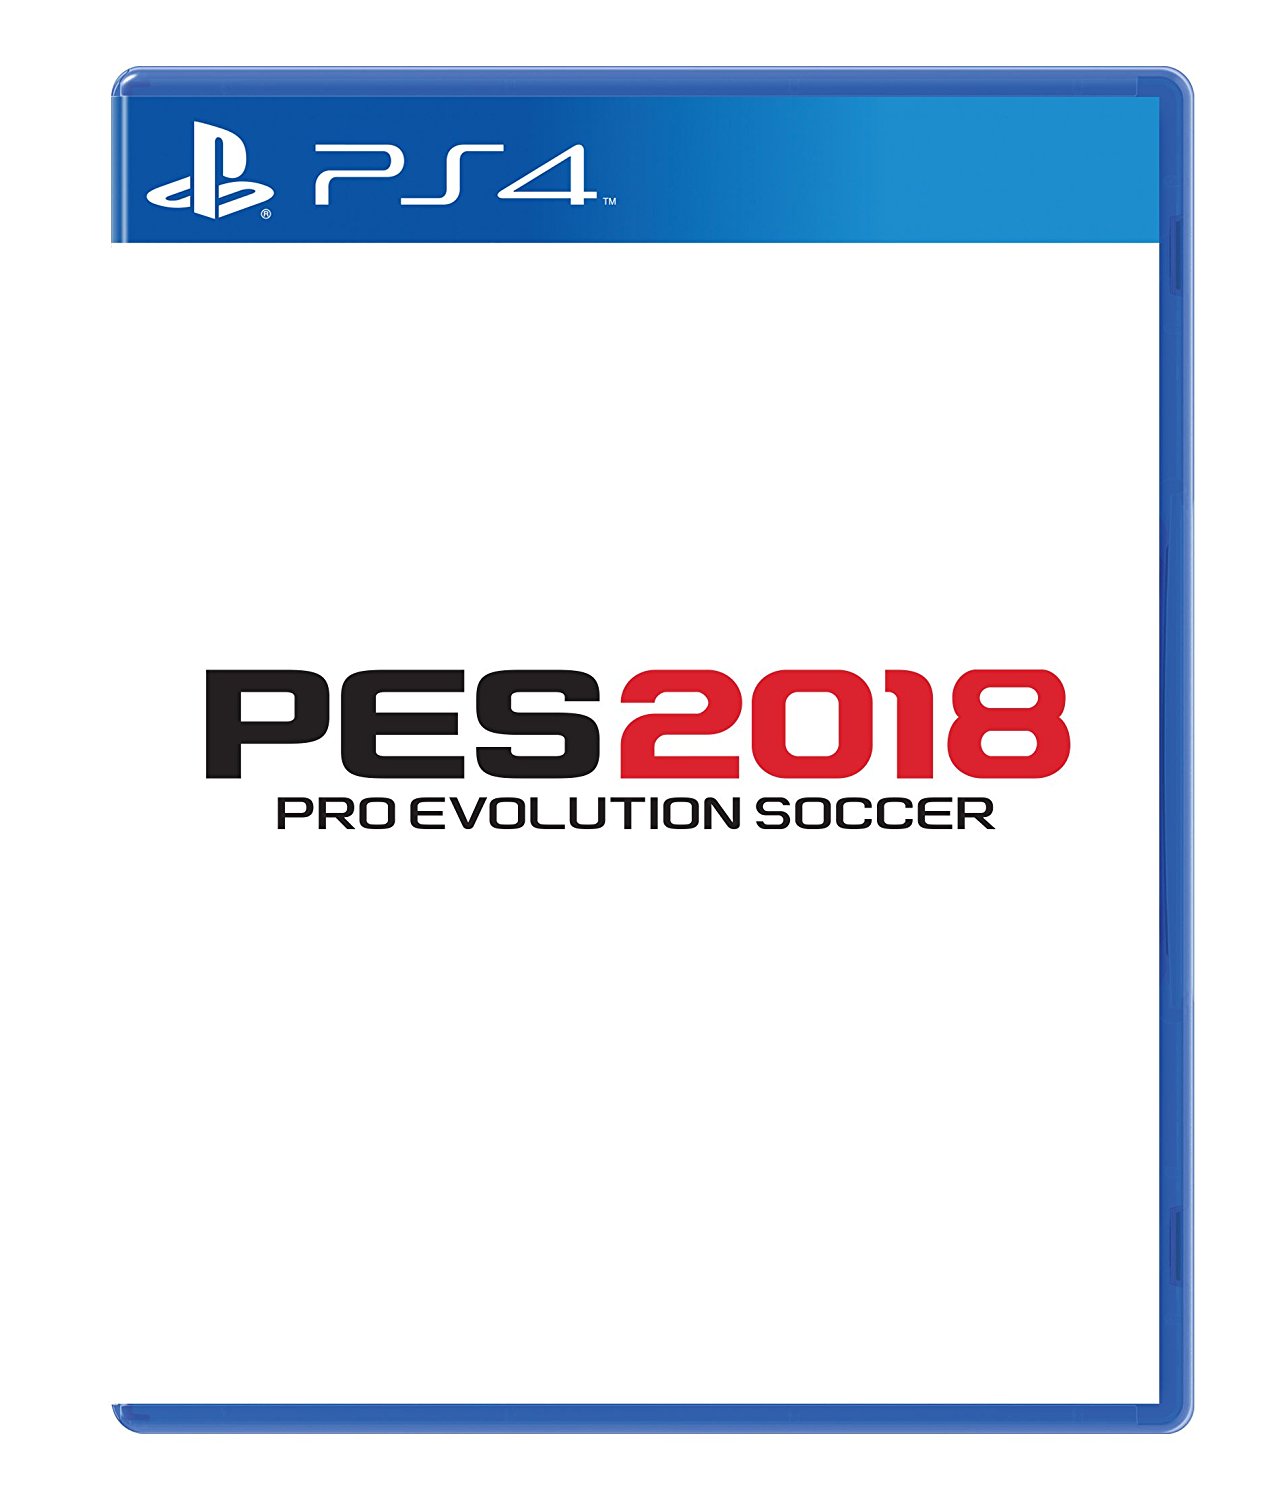 بازی PES 2018 در فروشگاه آمازون لیست شد | تاریخ انتشار آن لو رفت